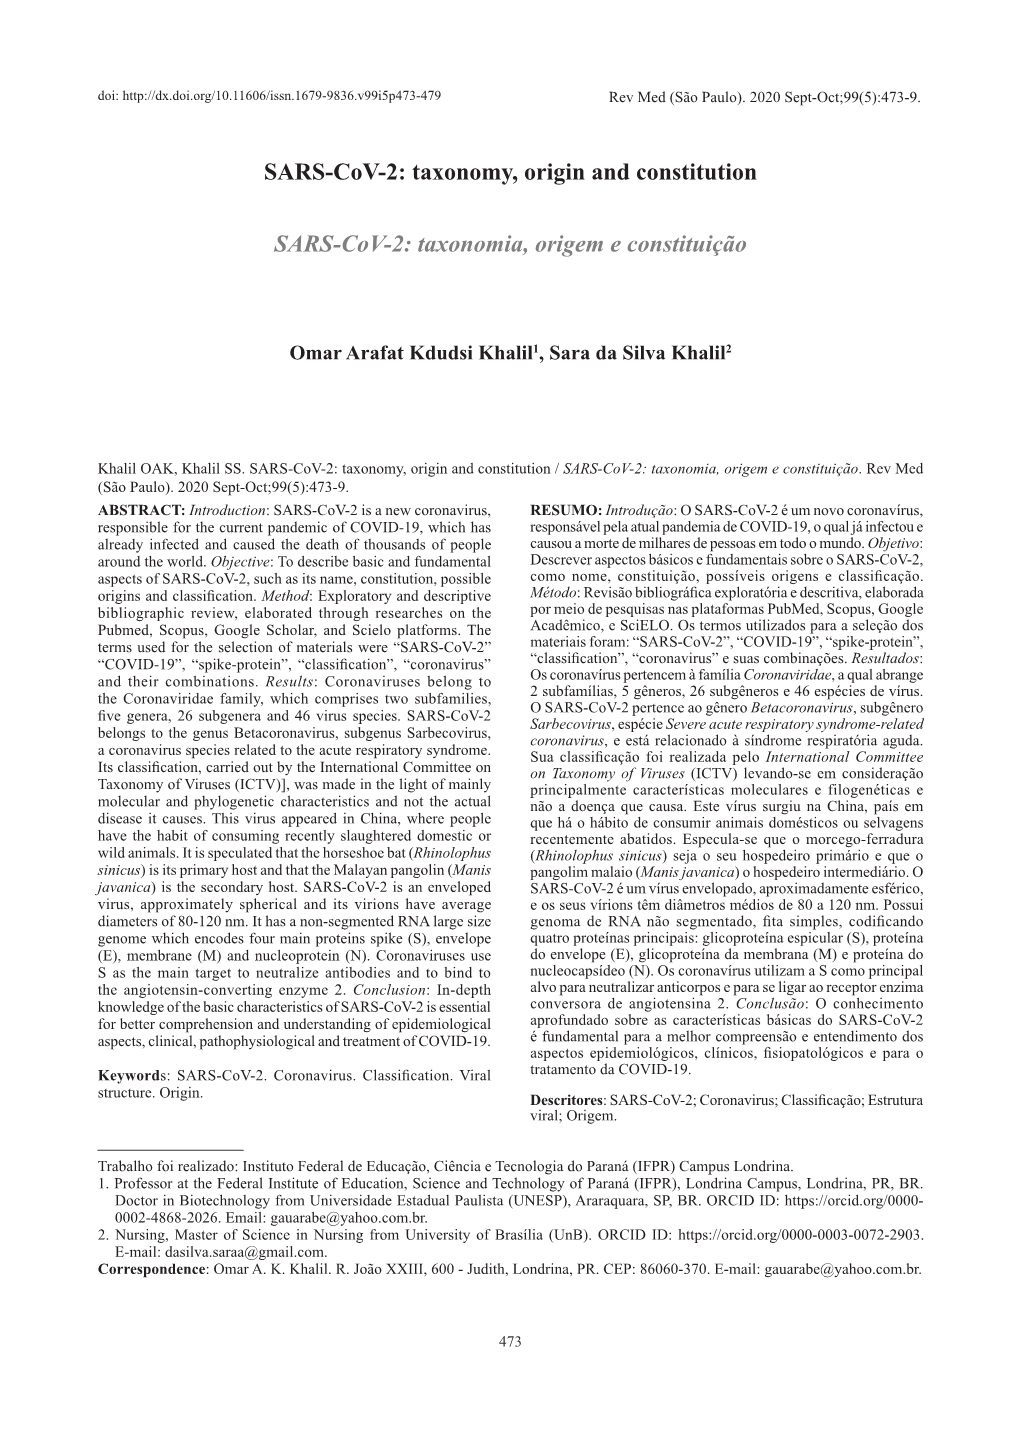 Taxonomy, Origin and Constitution SARS-Cov-2